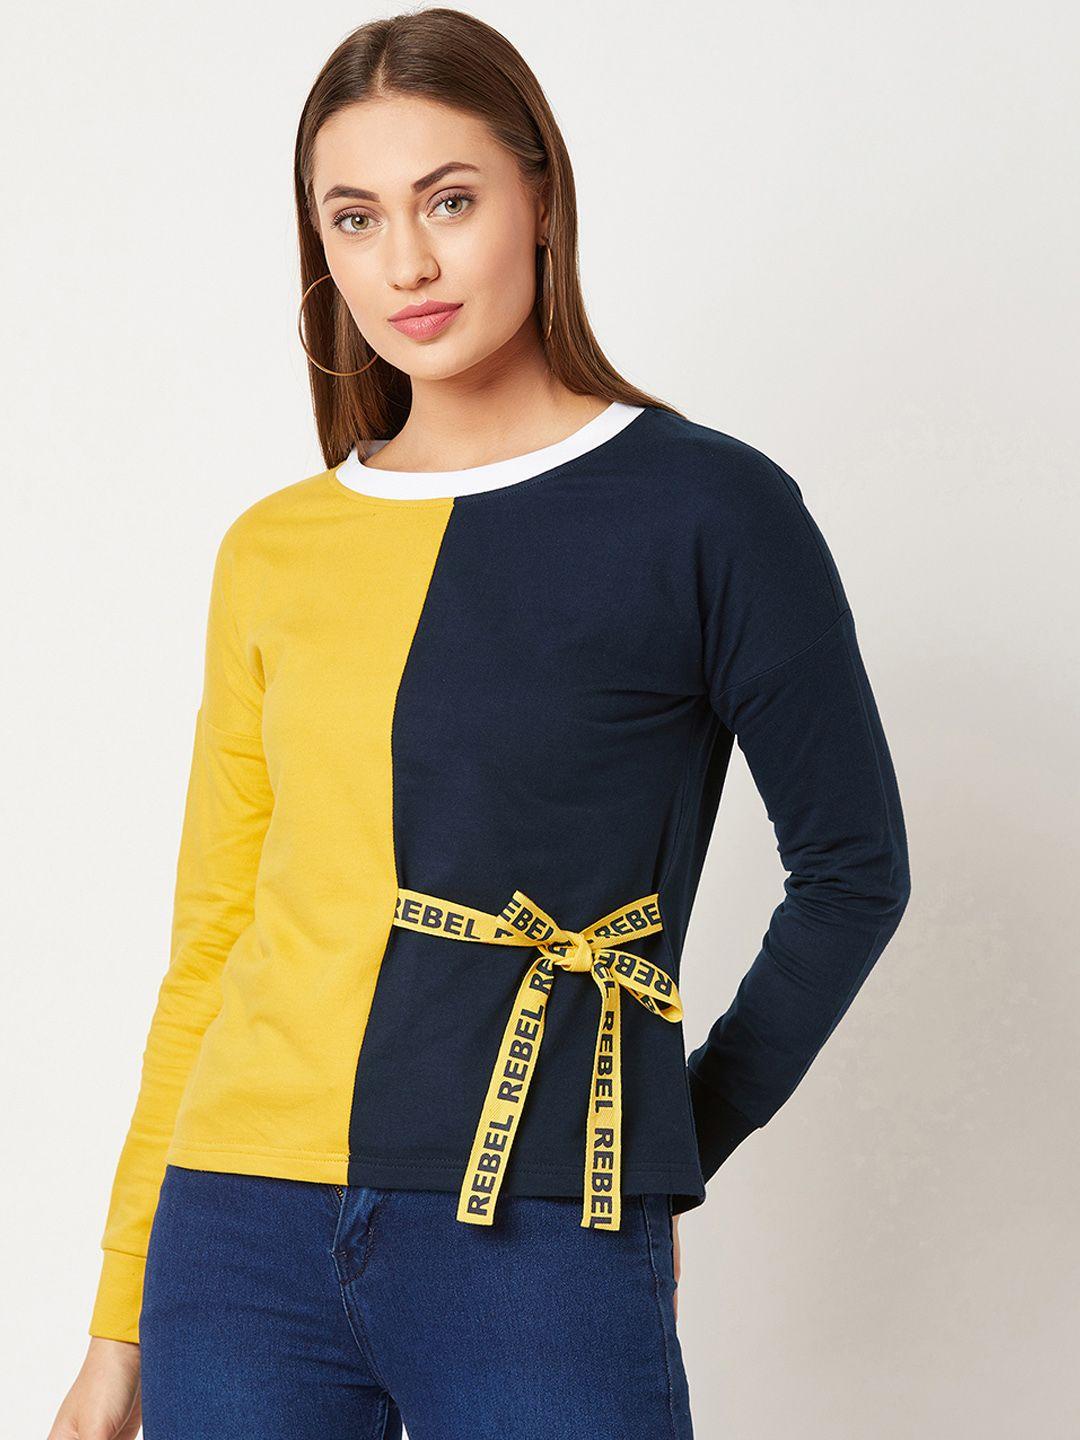 miss-chase-women-mustard-yellow-&-navy-blue-colourblocked-sweatshirt